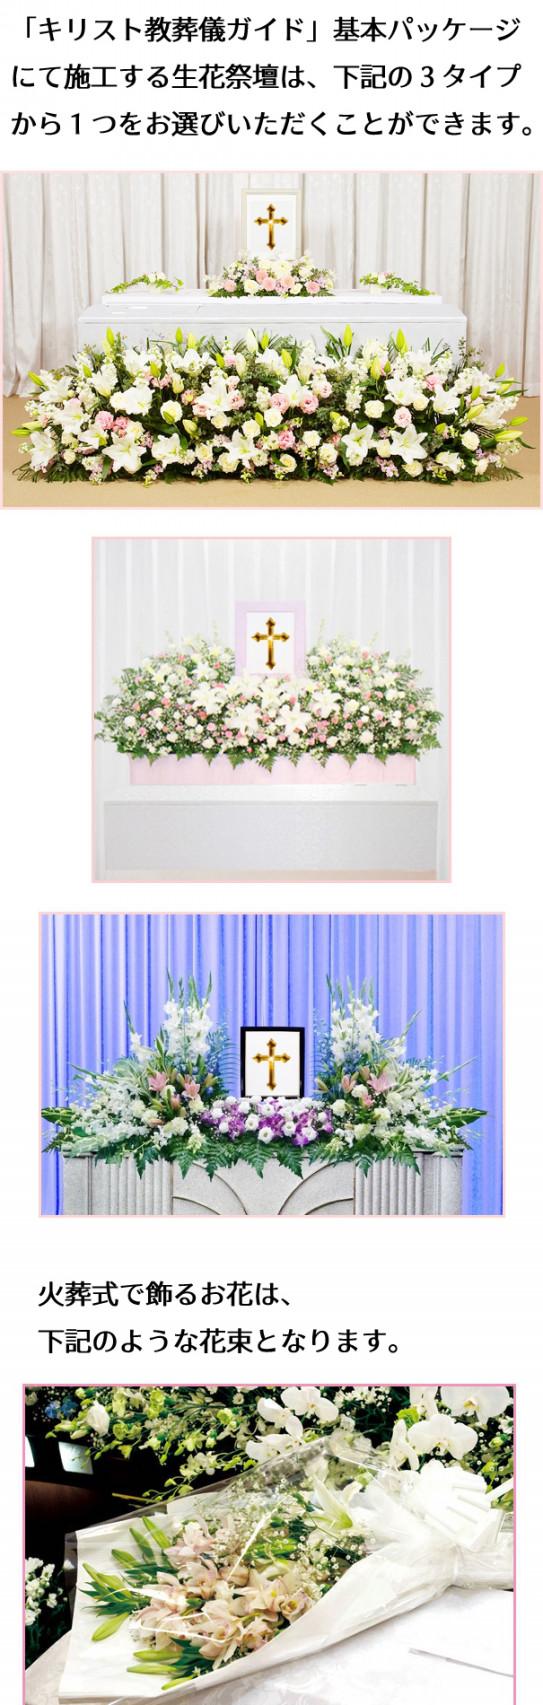 キリスト教葬儀ガイドの格安費用プラン キリスト教葬儀ガイド クリスチャン葬儀社 牧師派遣